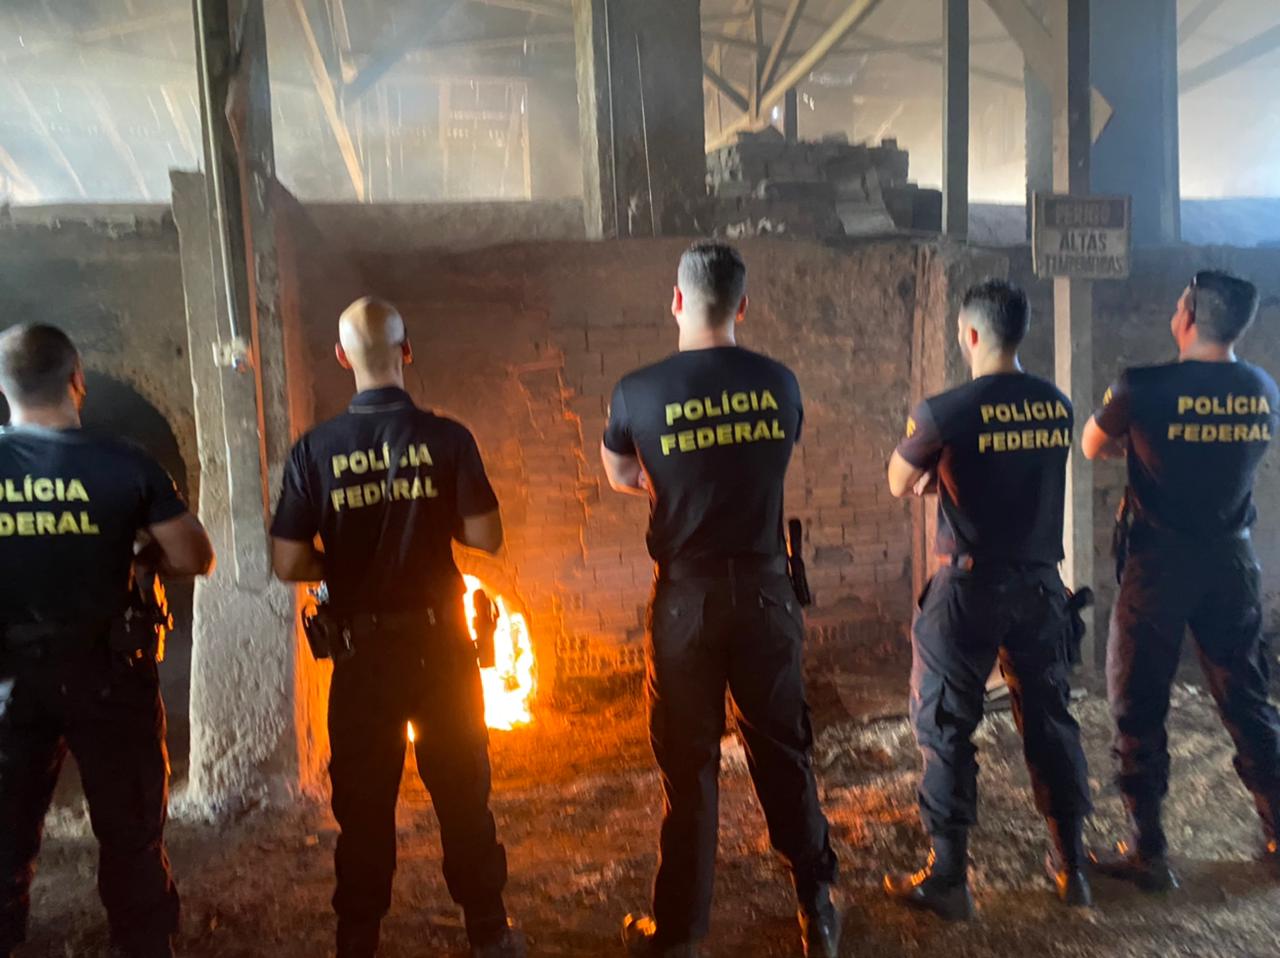 INCINERAÇÃO: Polícia Federal  queima mais de uma tonelada de drogas